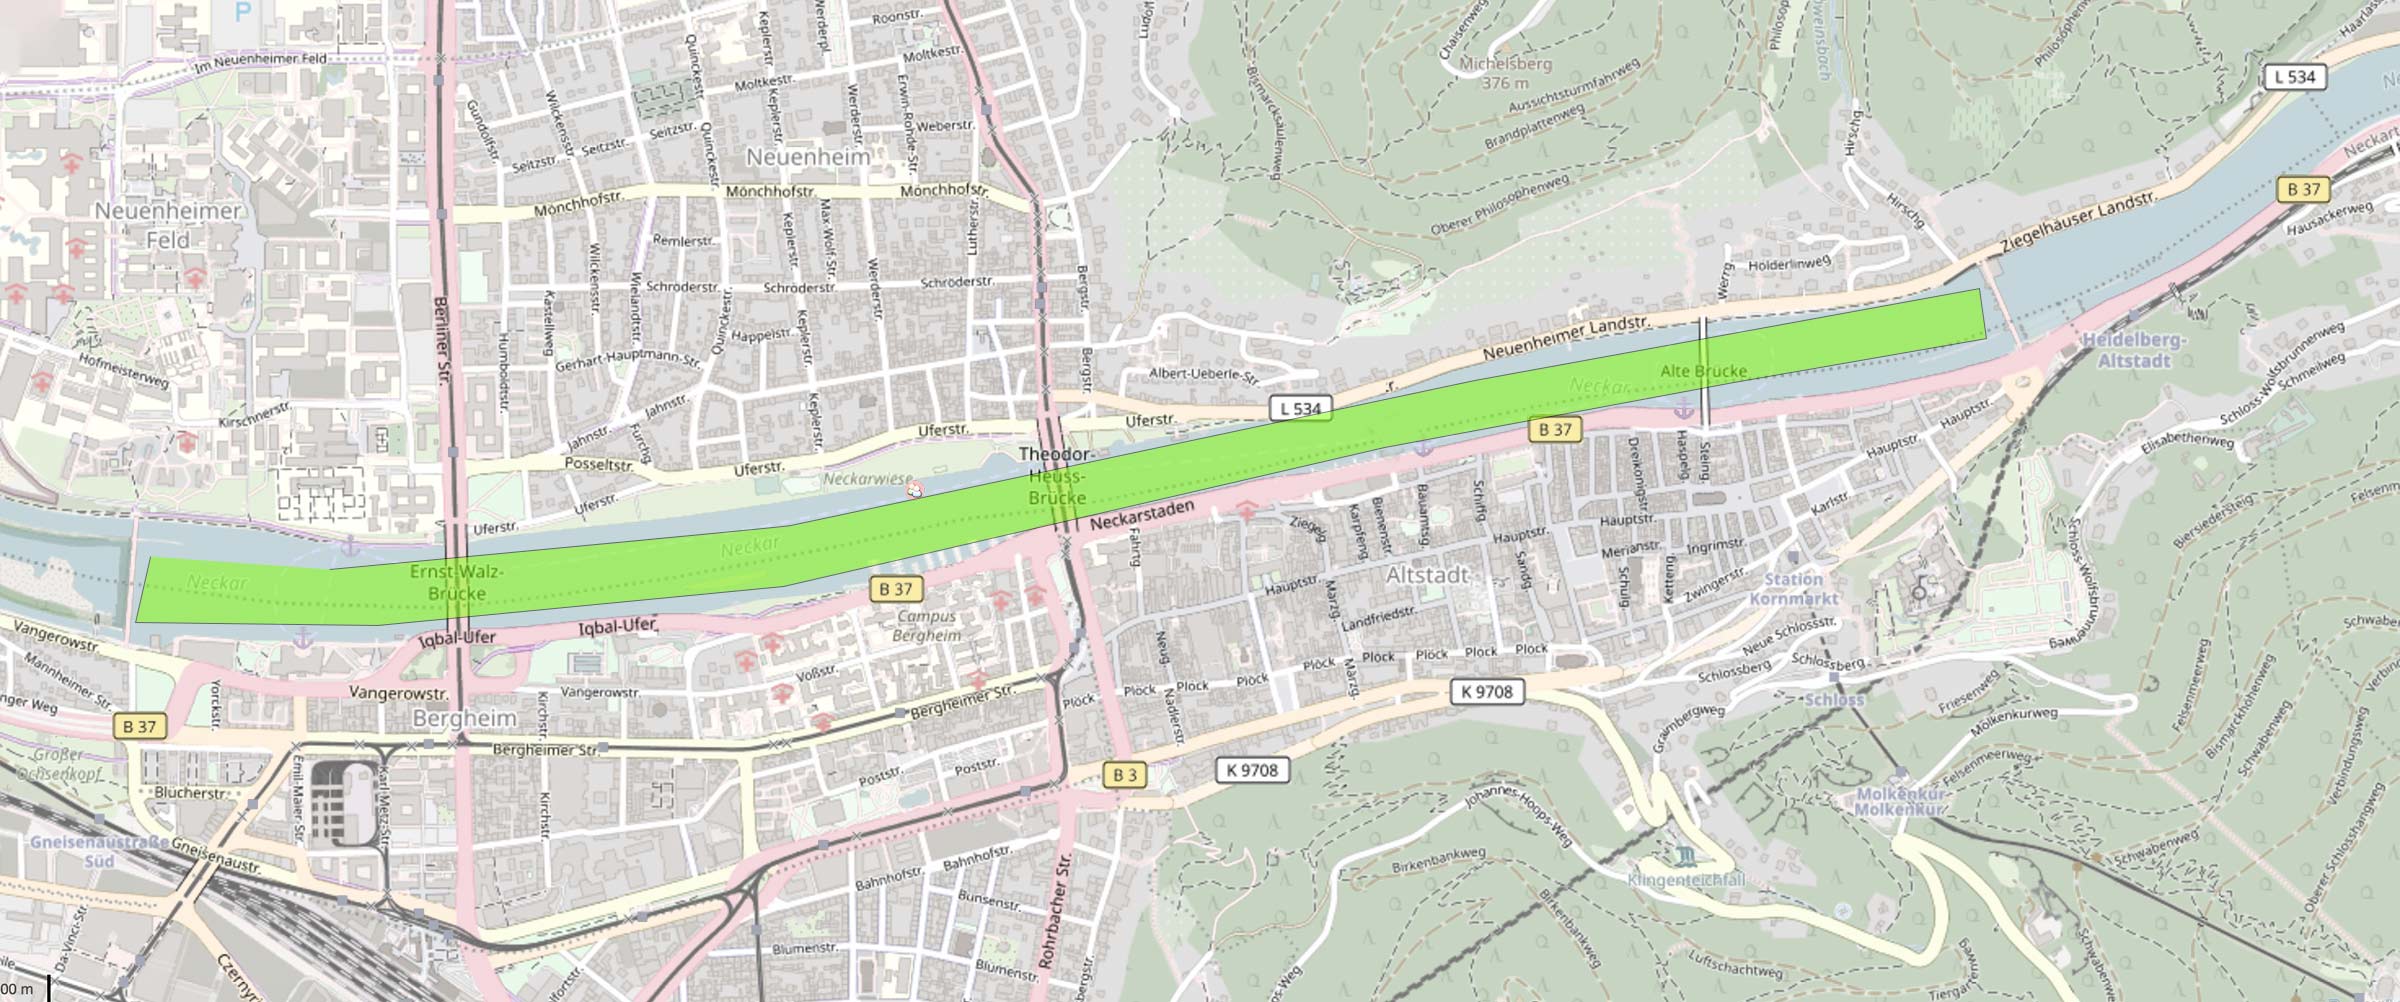 Die Karte zeigt den Verlauf einer Bootstour am Neckar in Heidelberg